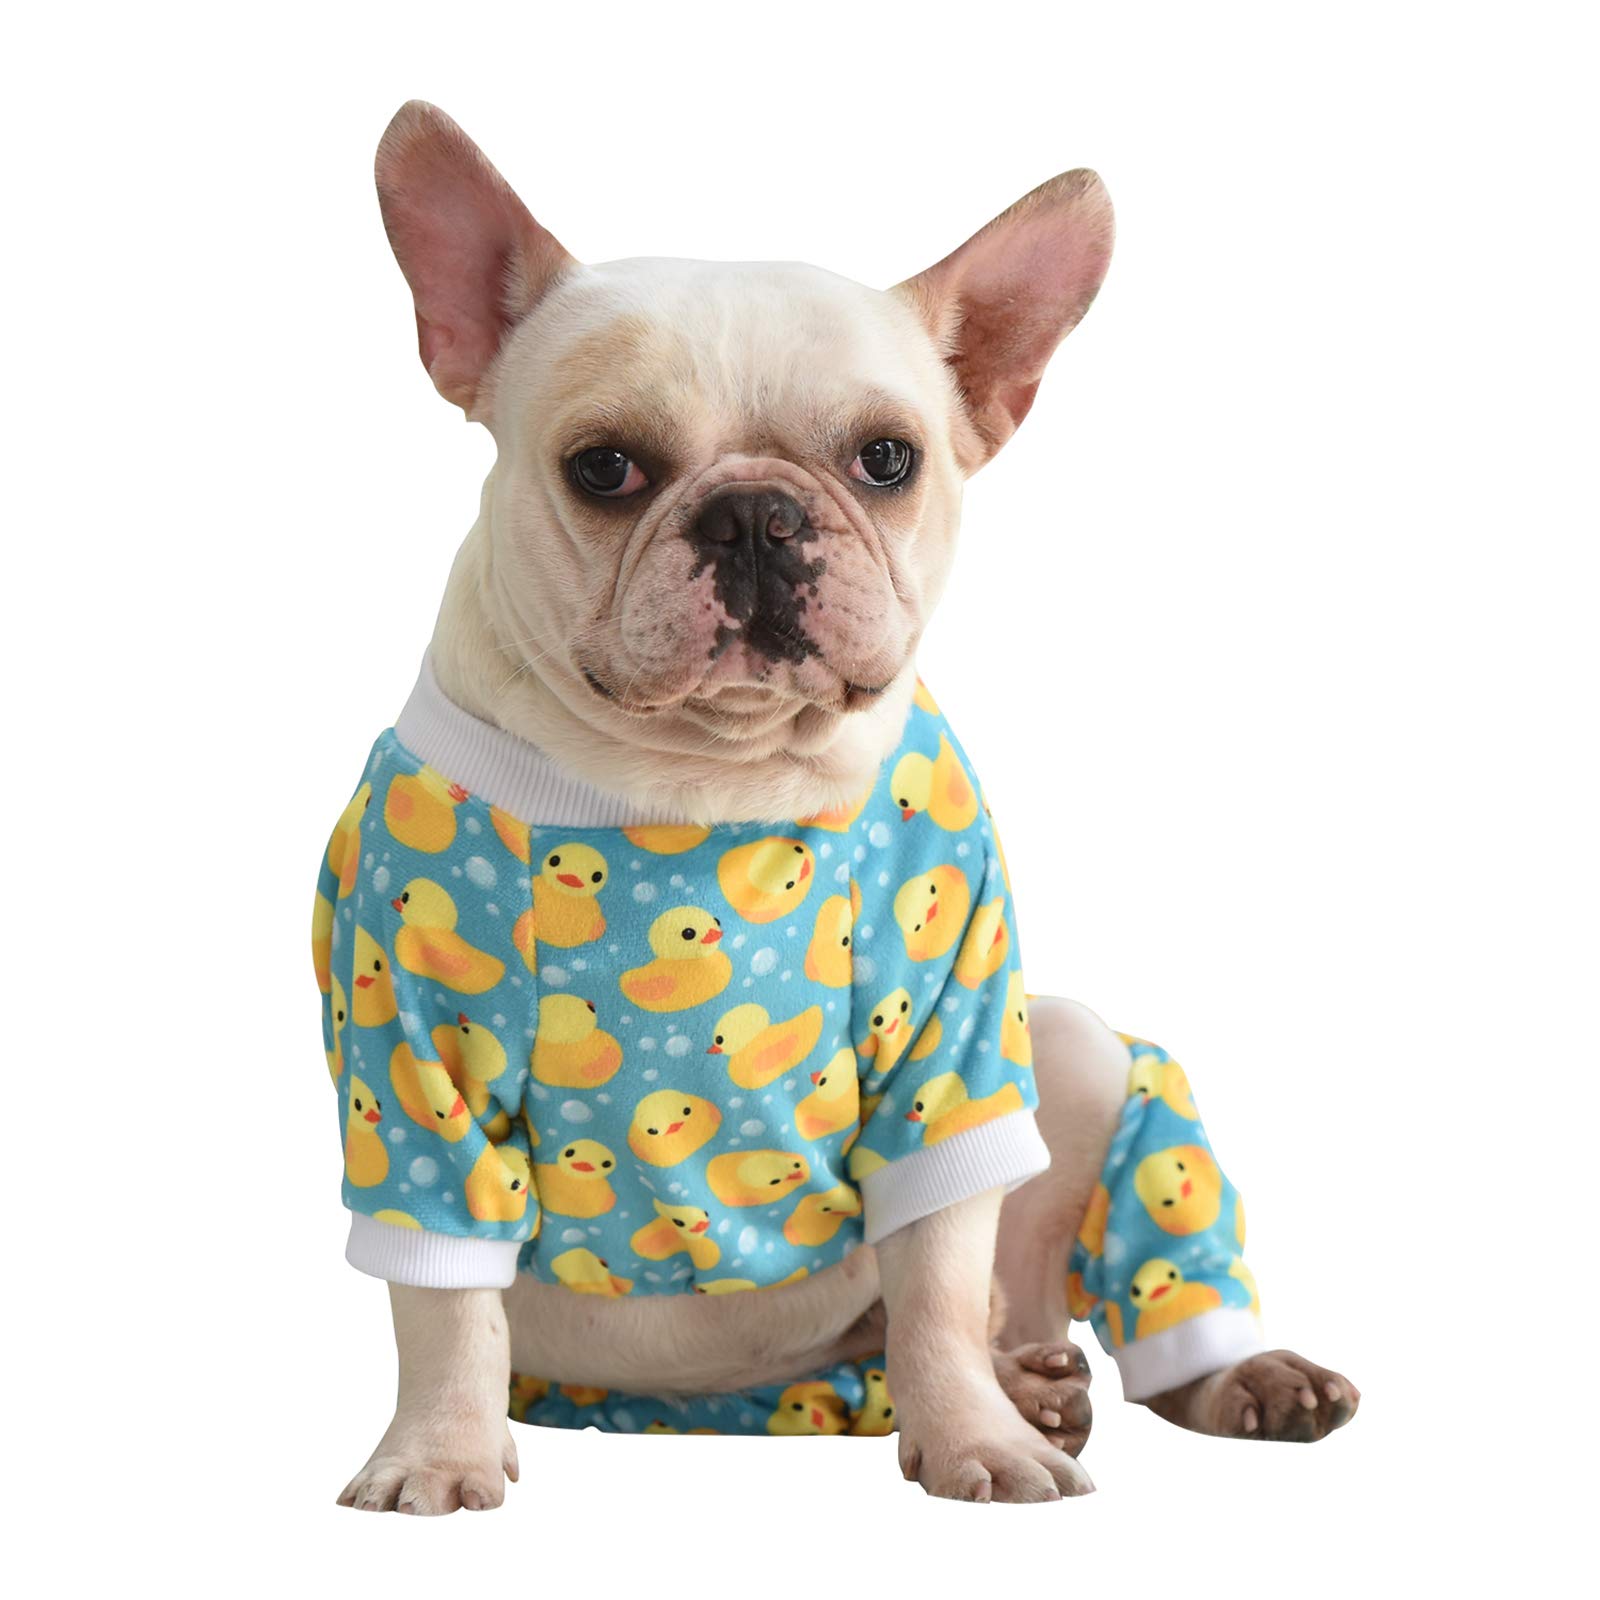 CuteBone Dog Pajamas Cutest 10 Pajamas for Dogs on Amazon - 6